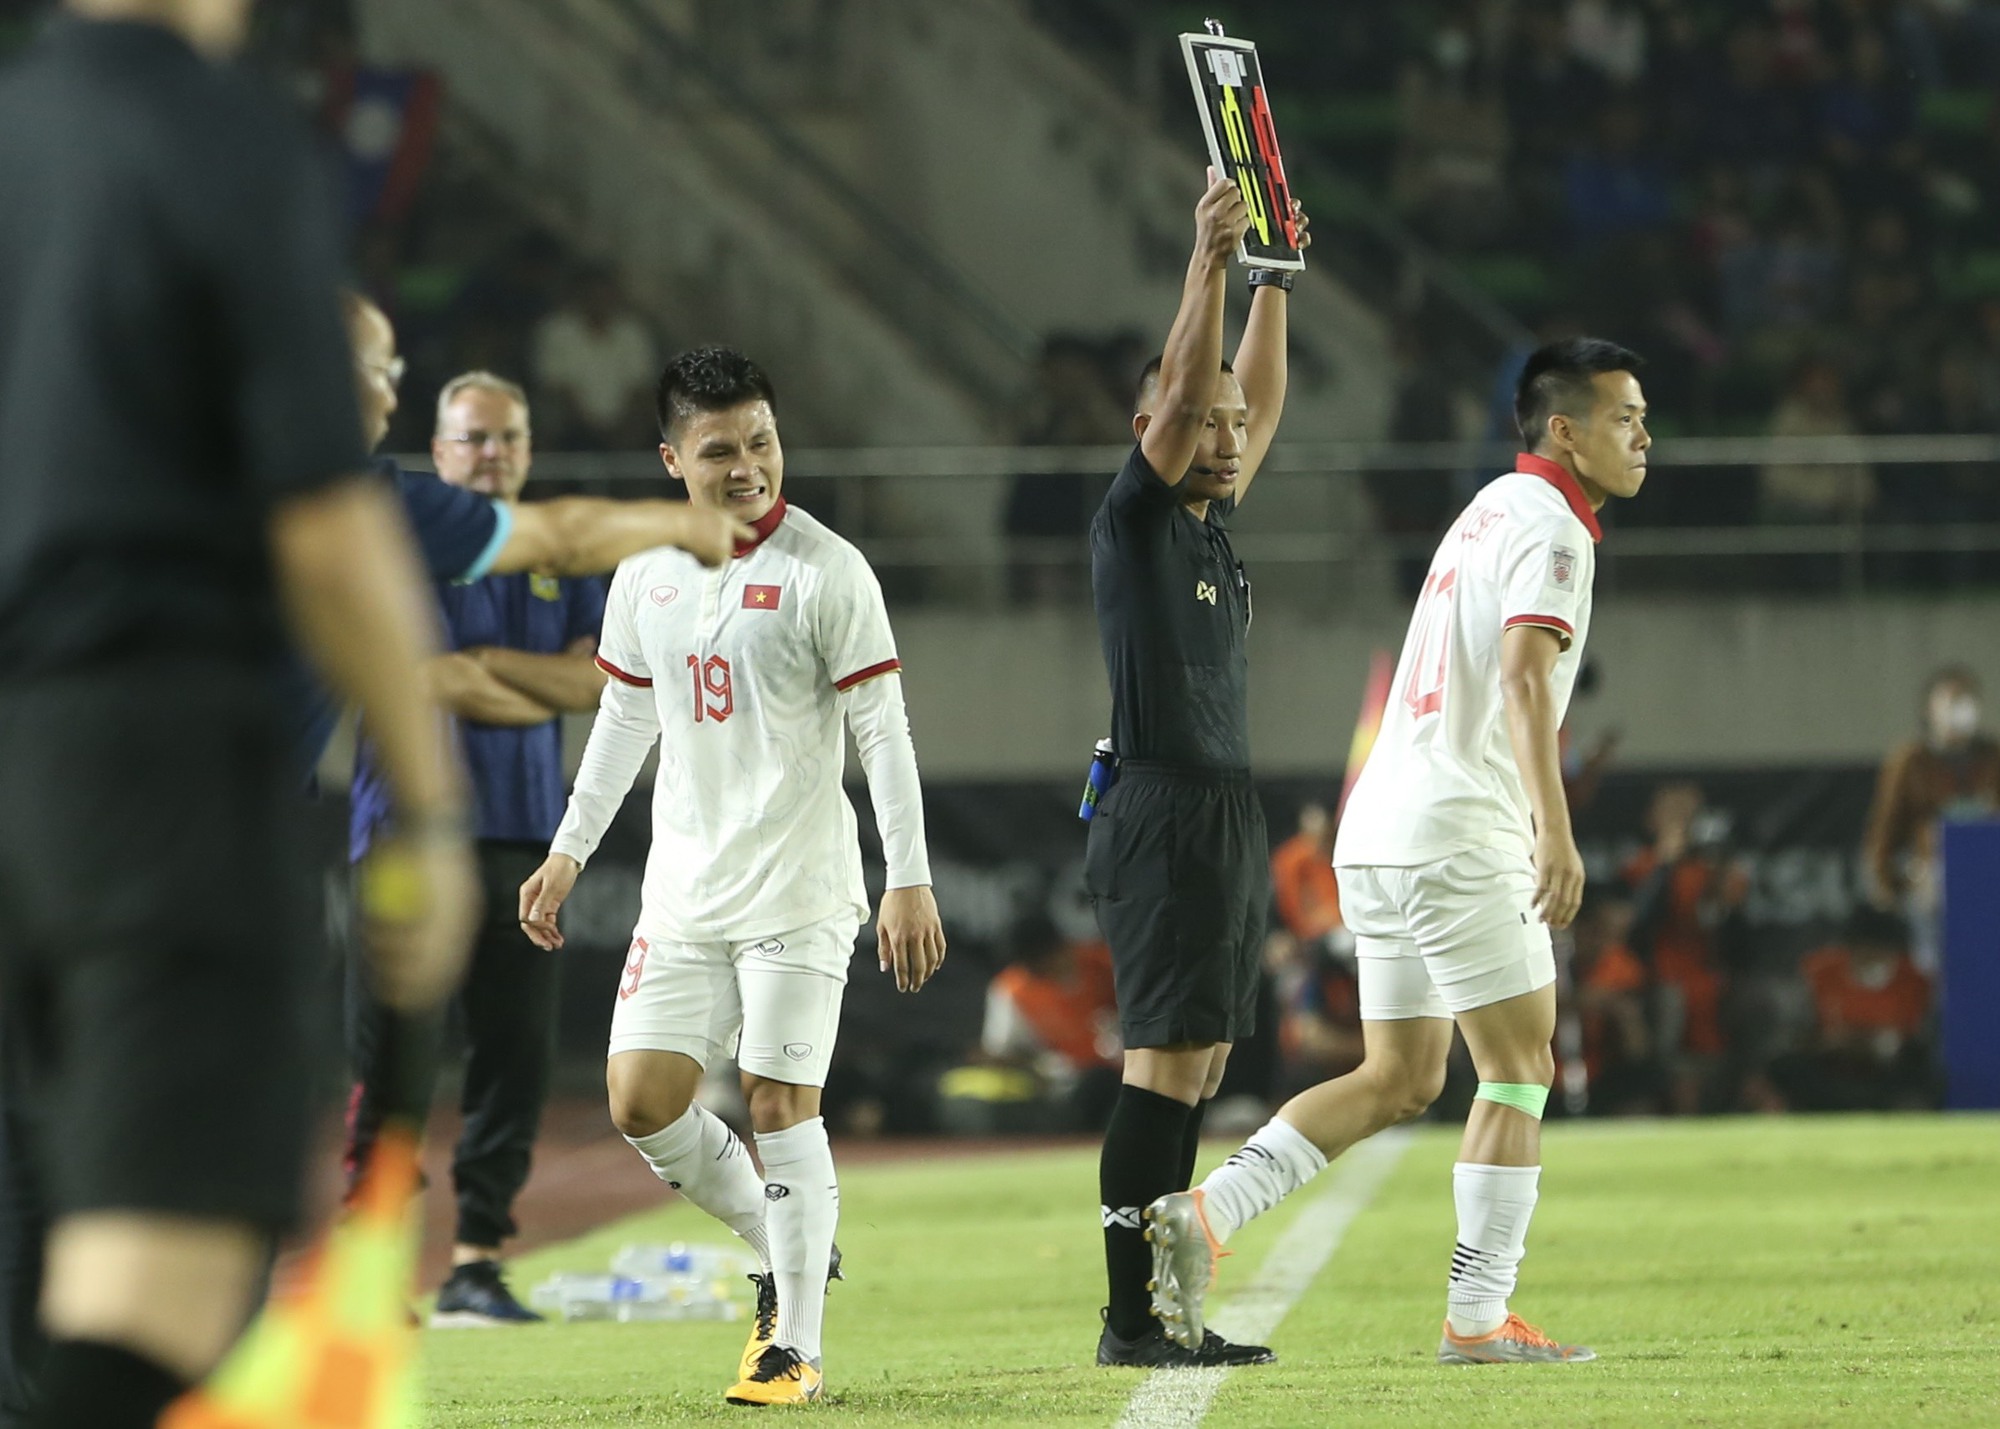 HLV Park Hang-seo căng thẳng trước khi tuyển Việt Nam thắng 6-0 Lào - Ảnh 1.